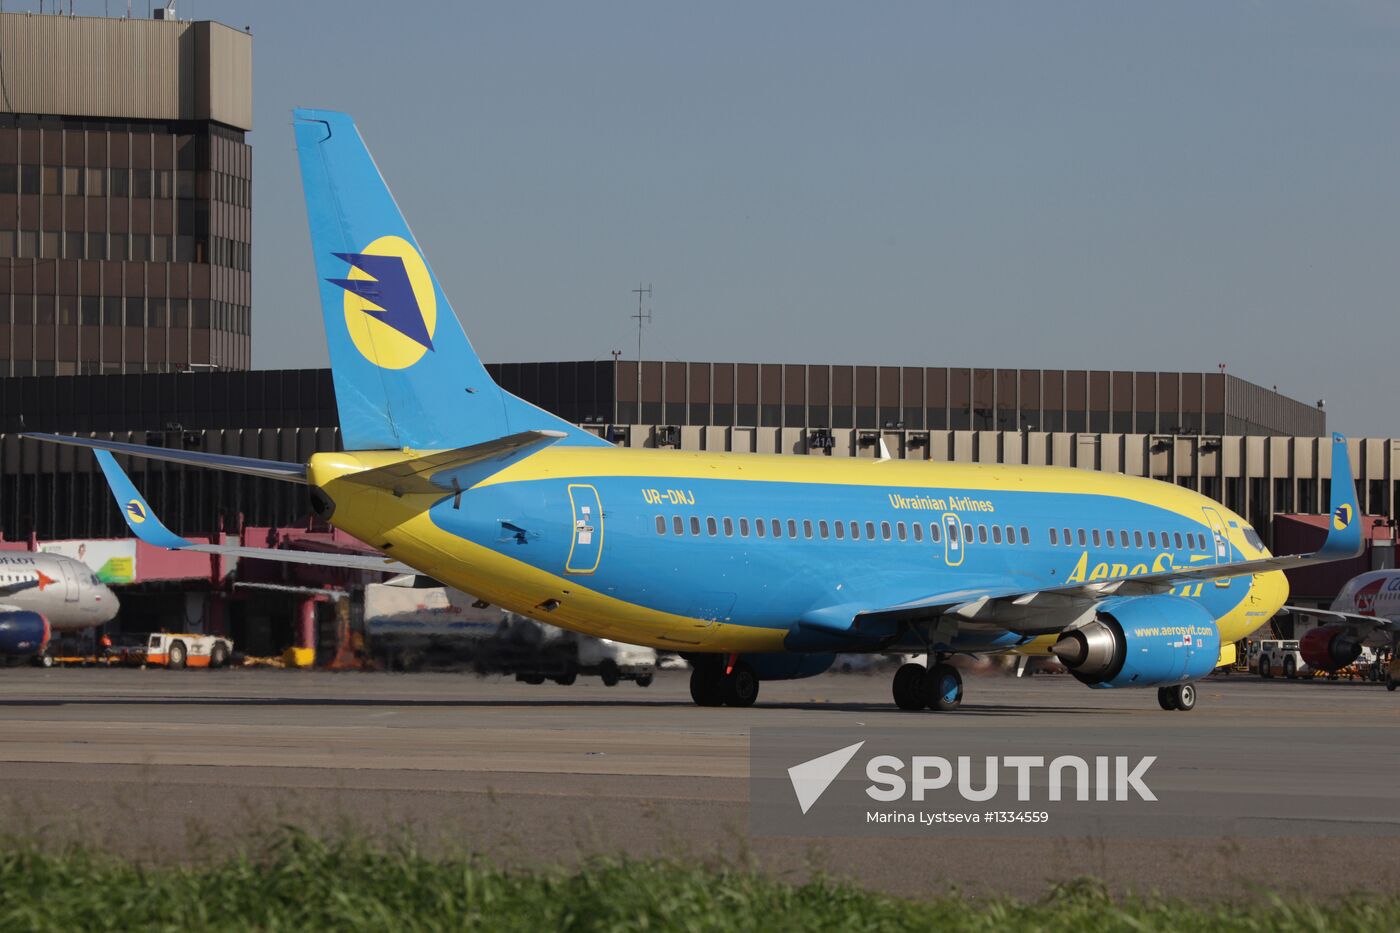 Aircraft of Ukrainian company AeroSvit